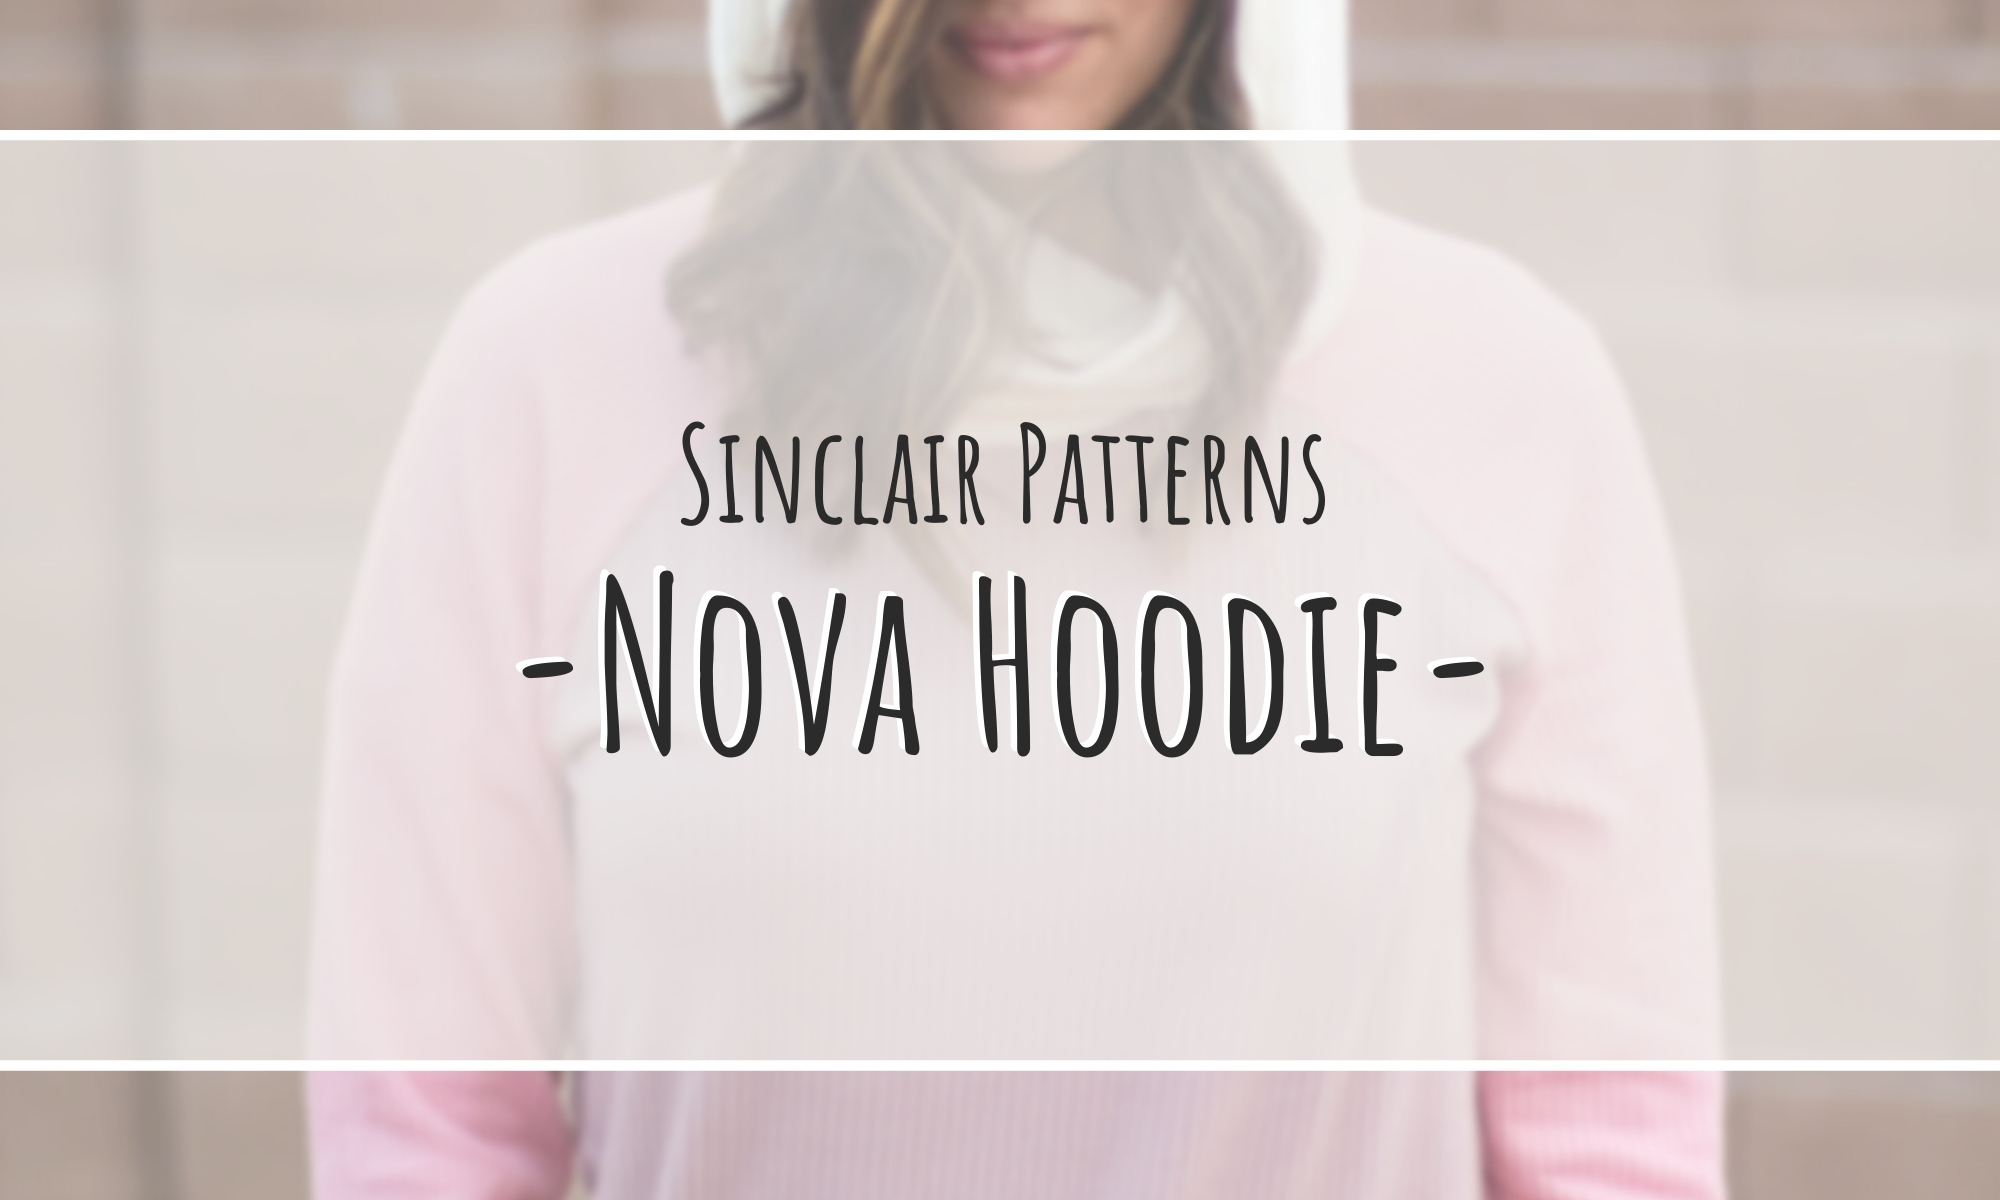 Sinclair Patterns - Nova Hoodie - sewingandthings